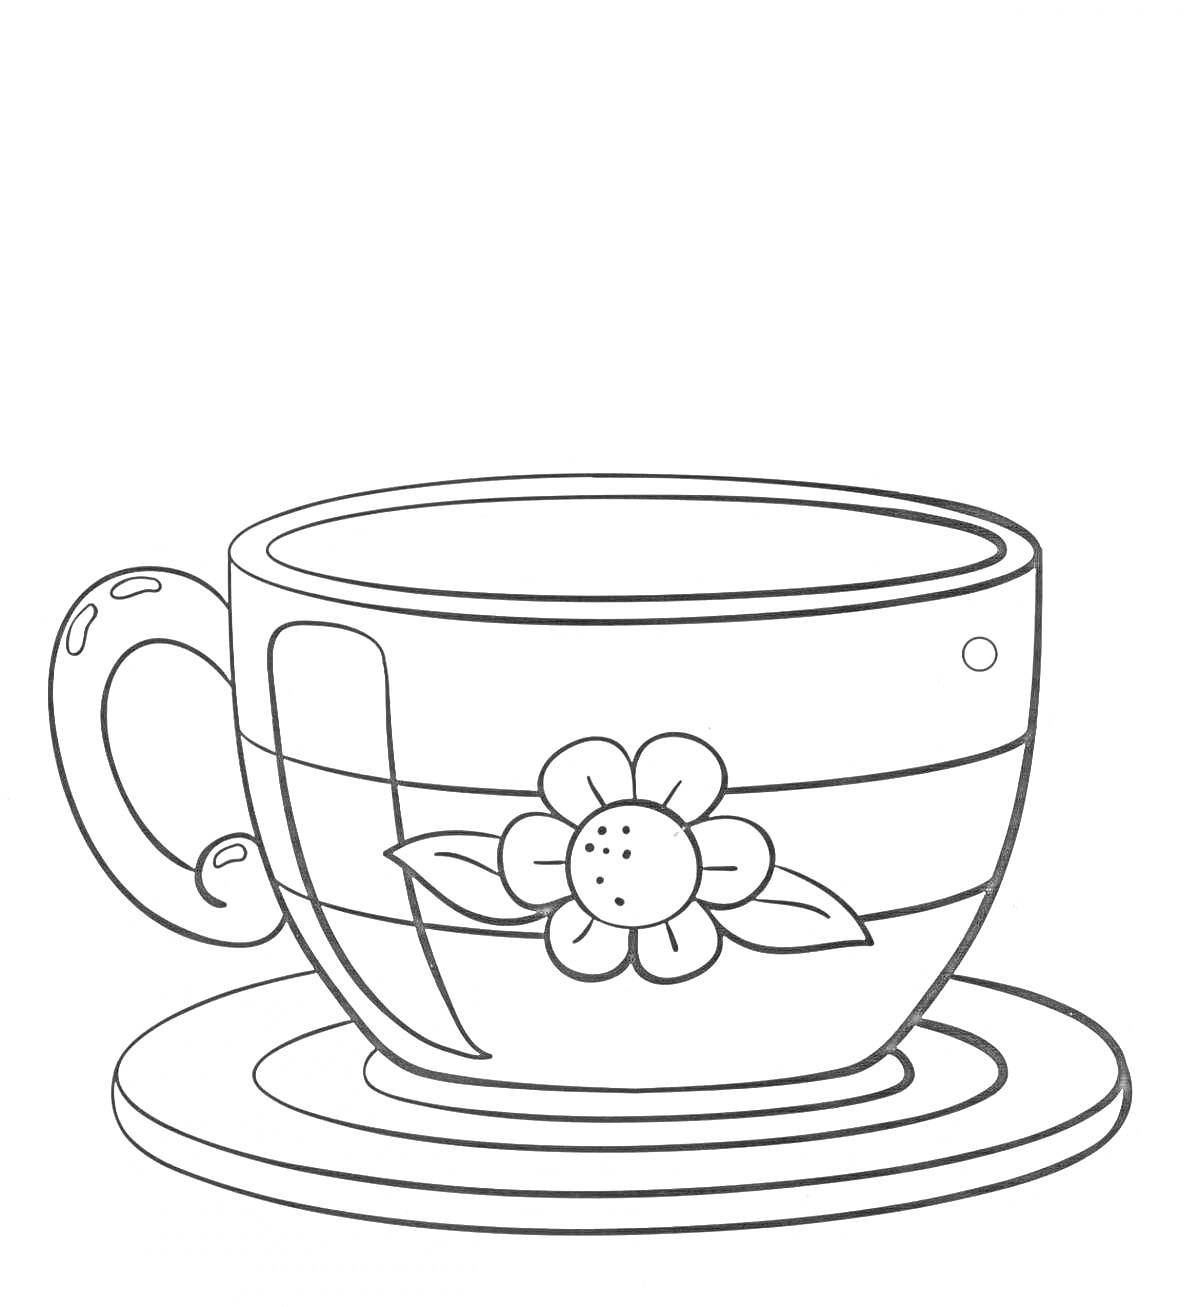 Раскраска чашка с блюдцем и цветком